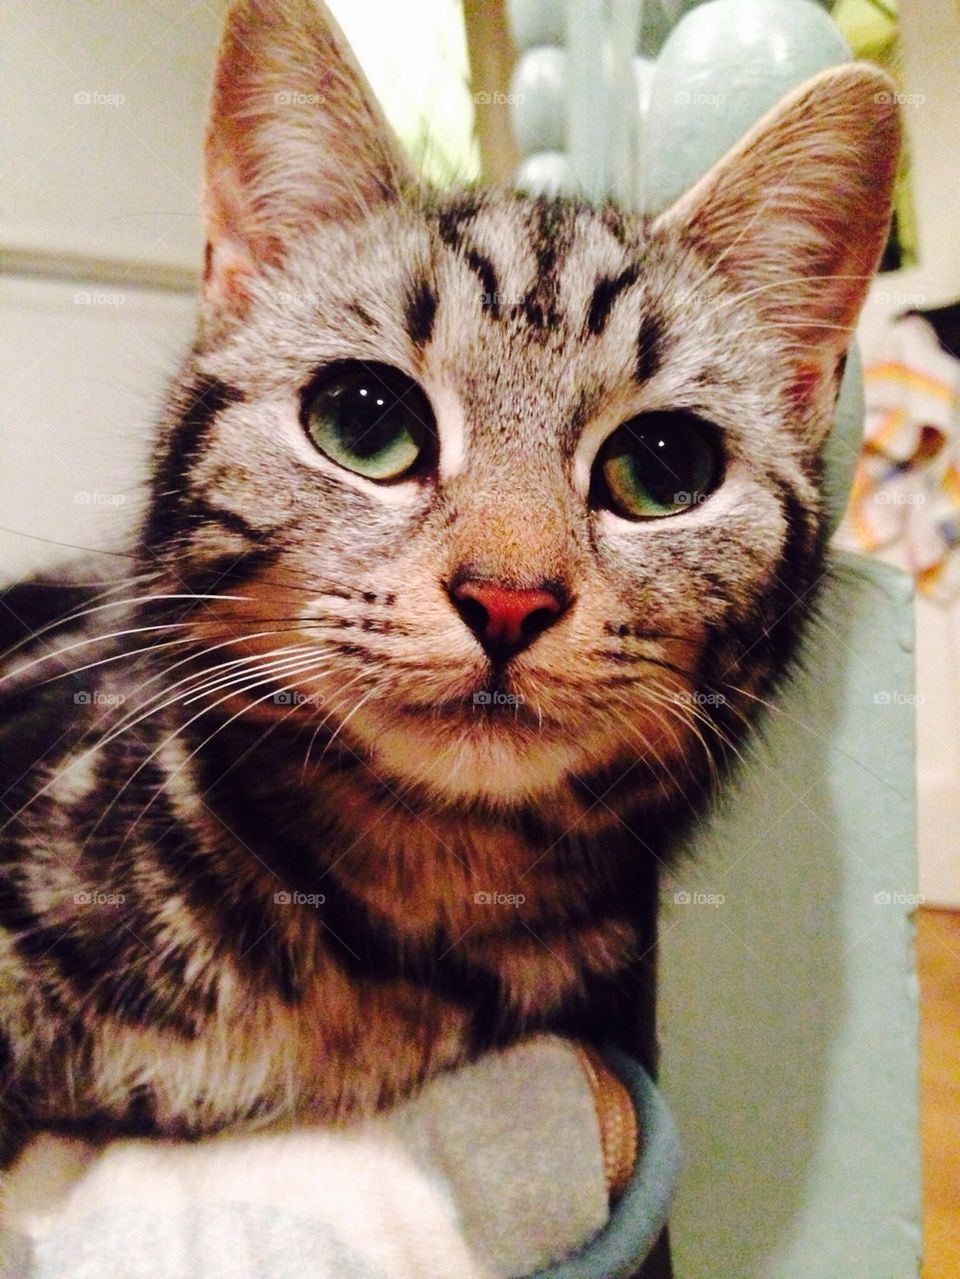 Green eye stripey cat / kitten